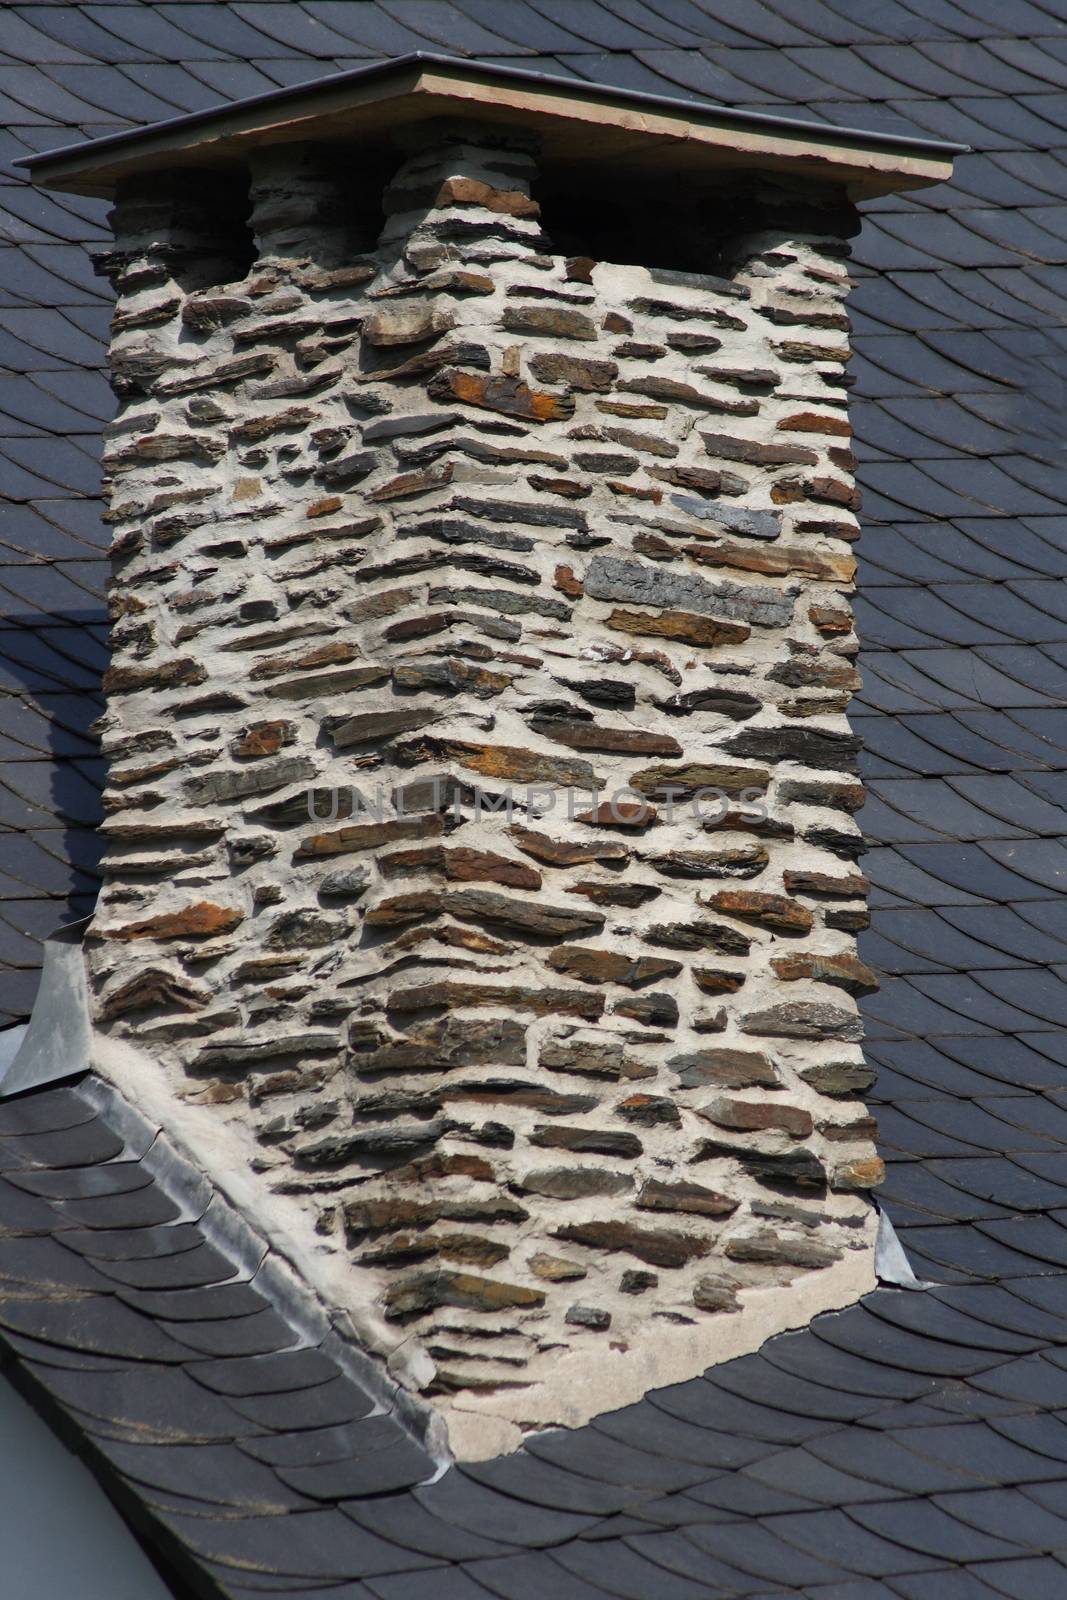 Sch�ner Schornstein aus Natursteinen gemauert by hadot